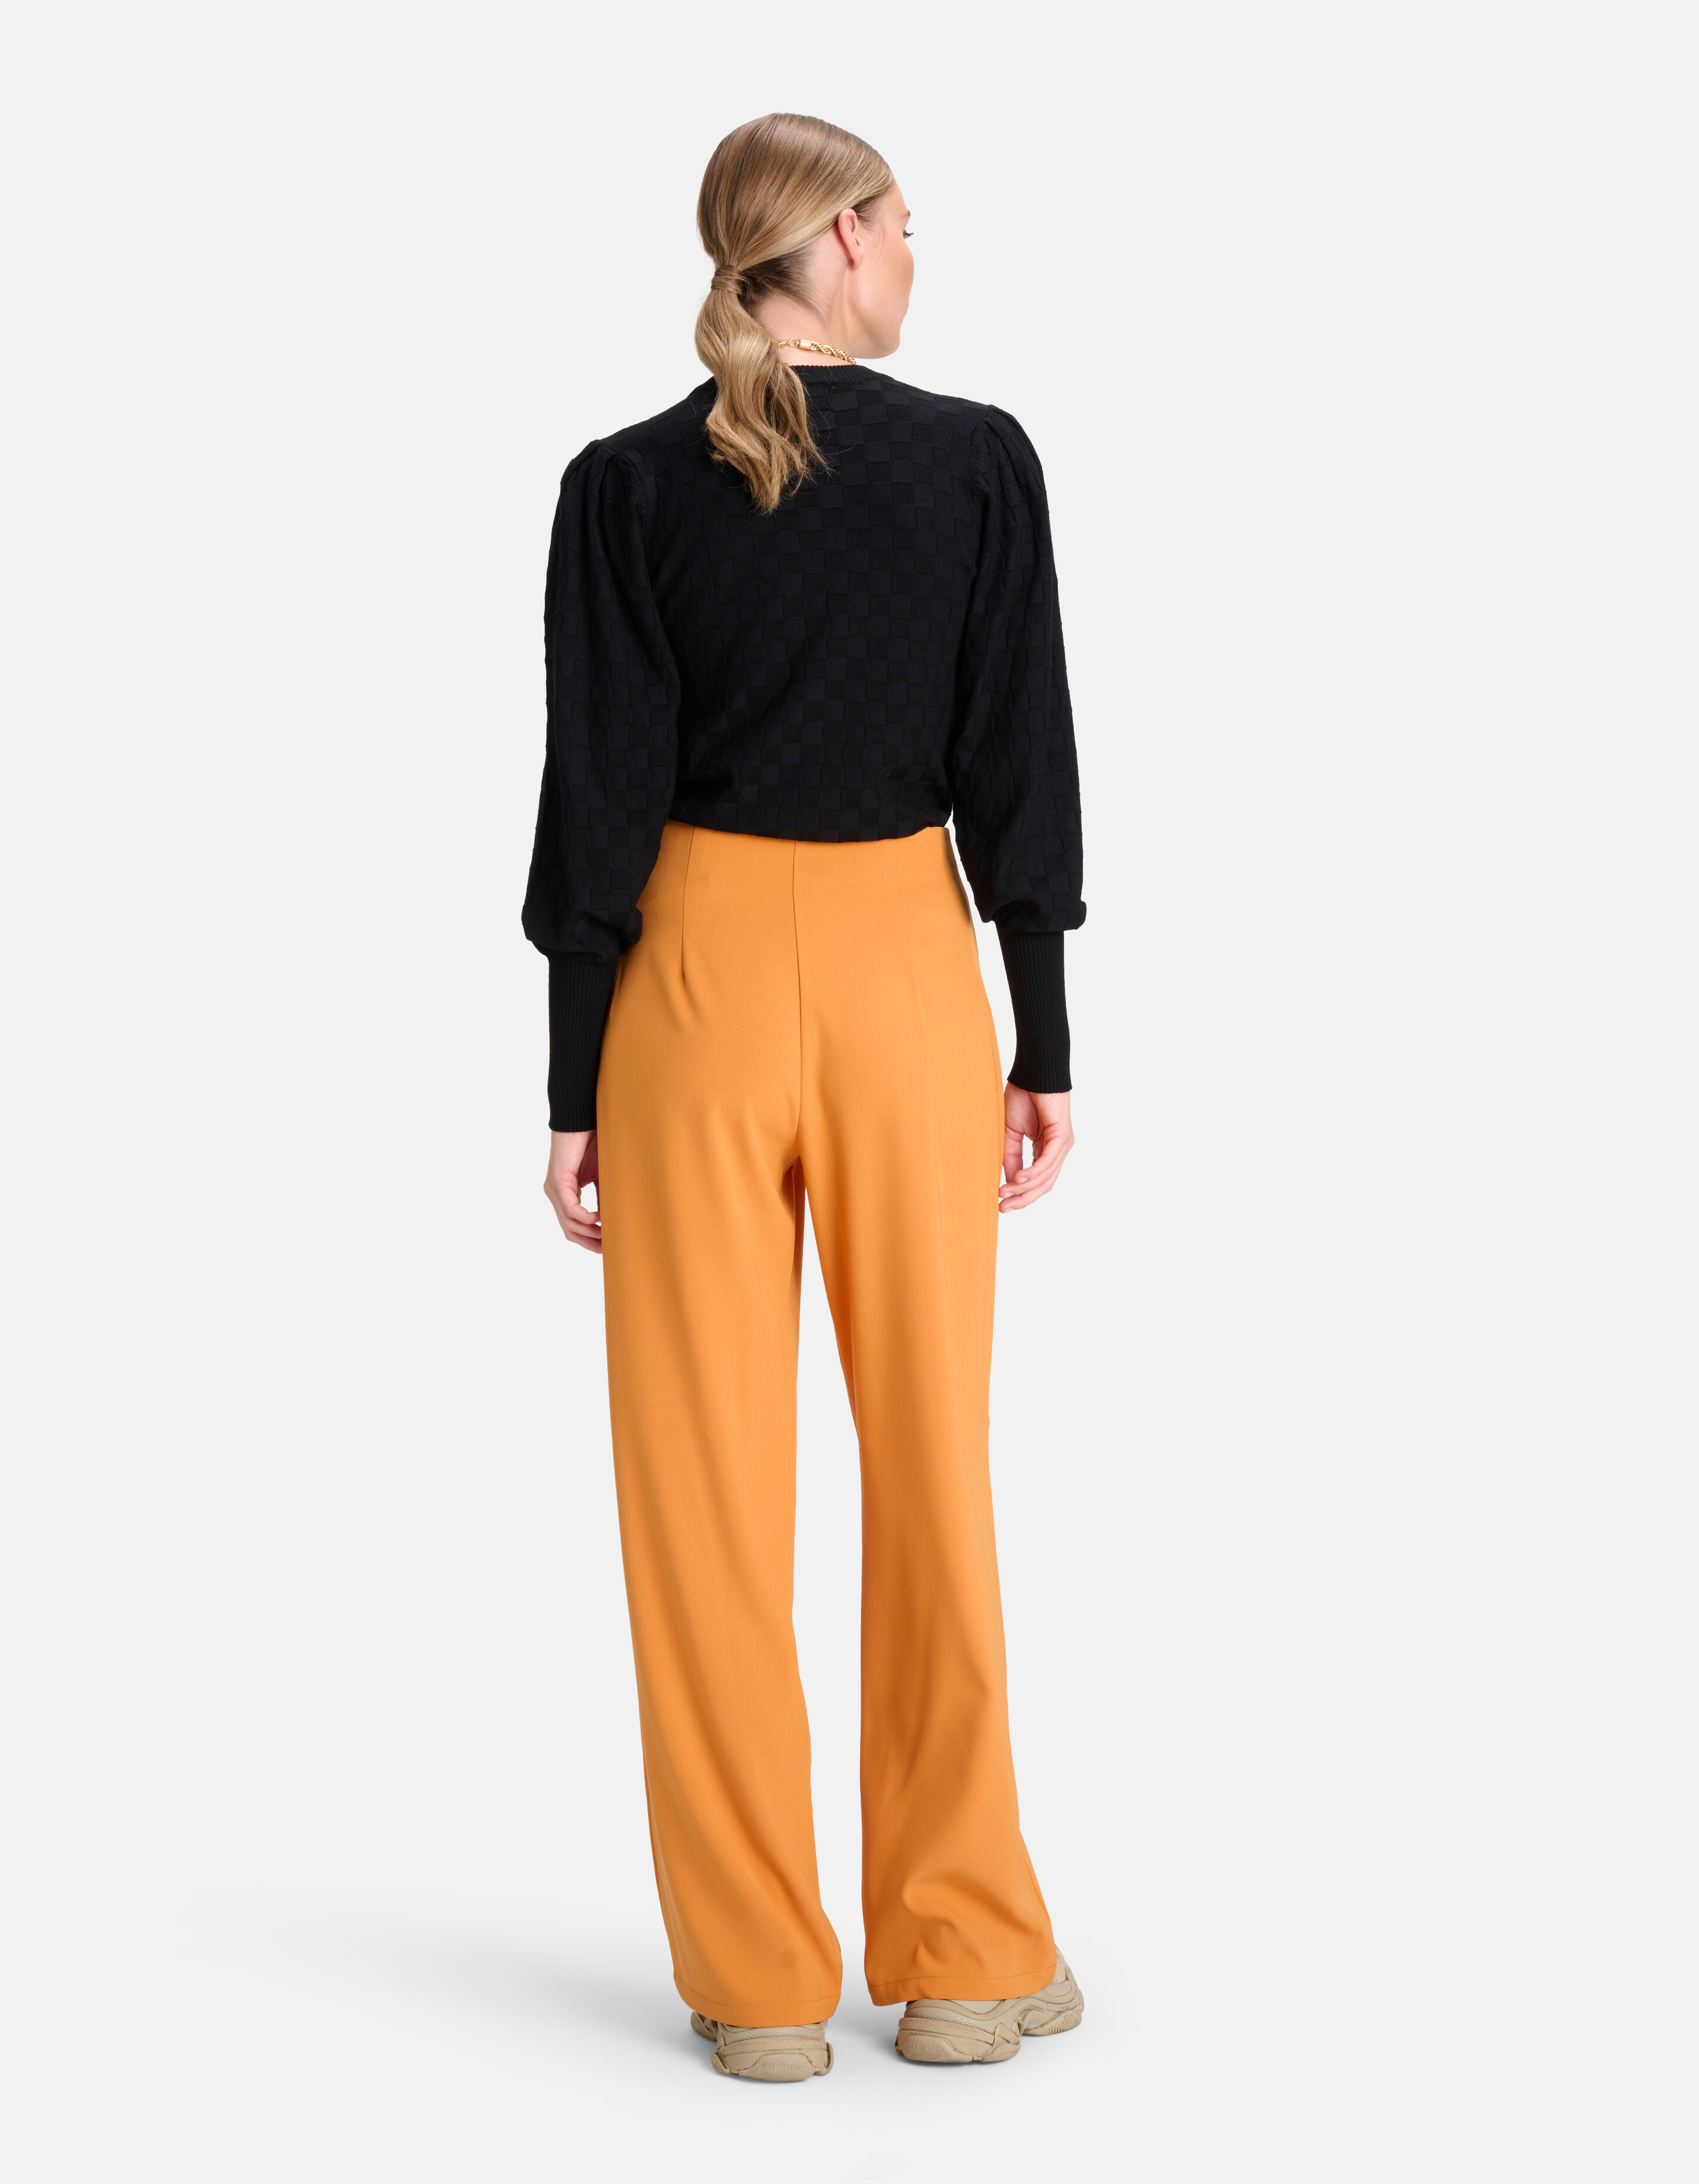 Wide Leg Pantalon Oranje By Mieke SHOEBY WOMEN